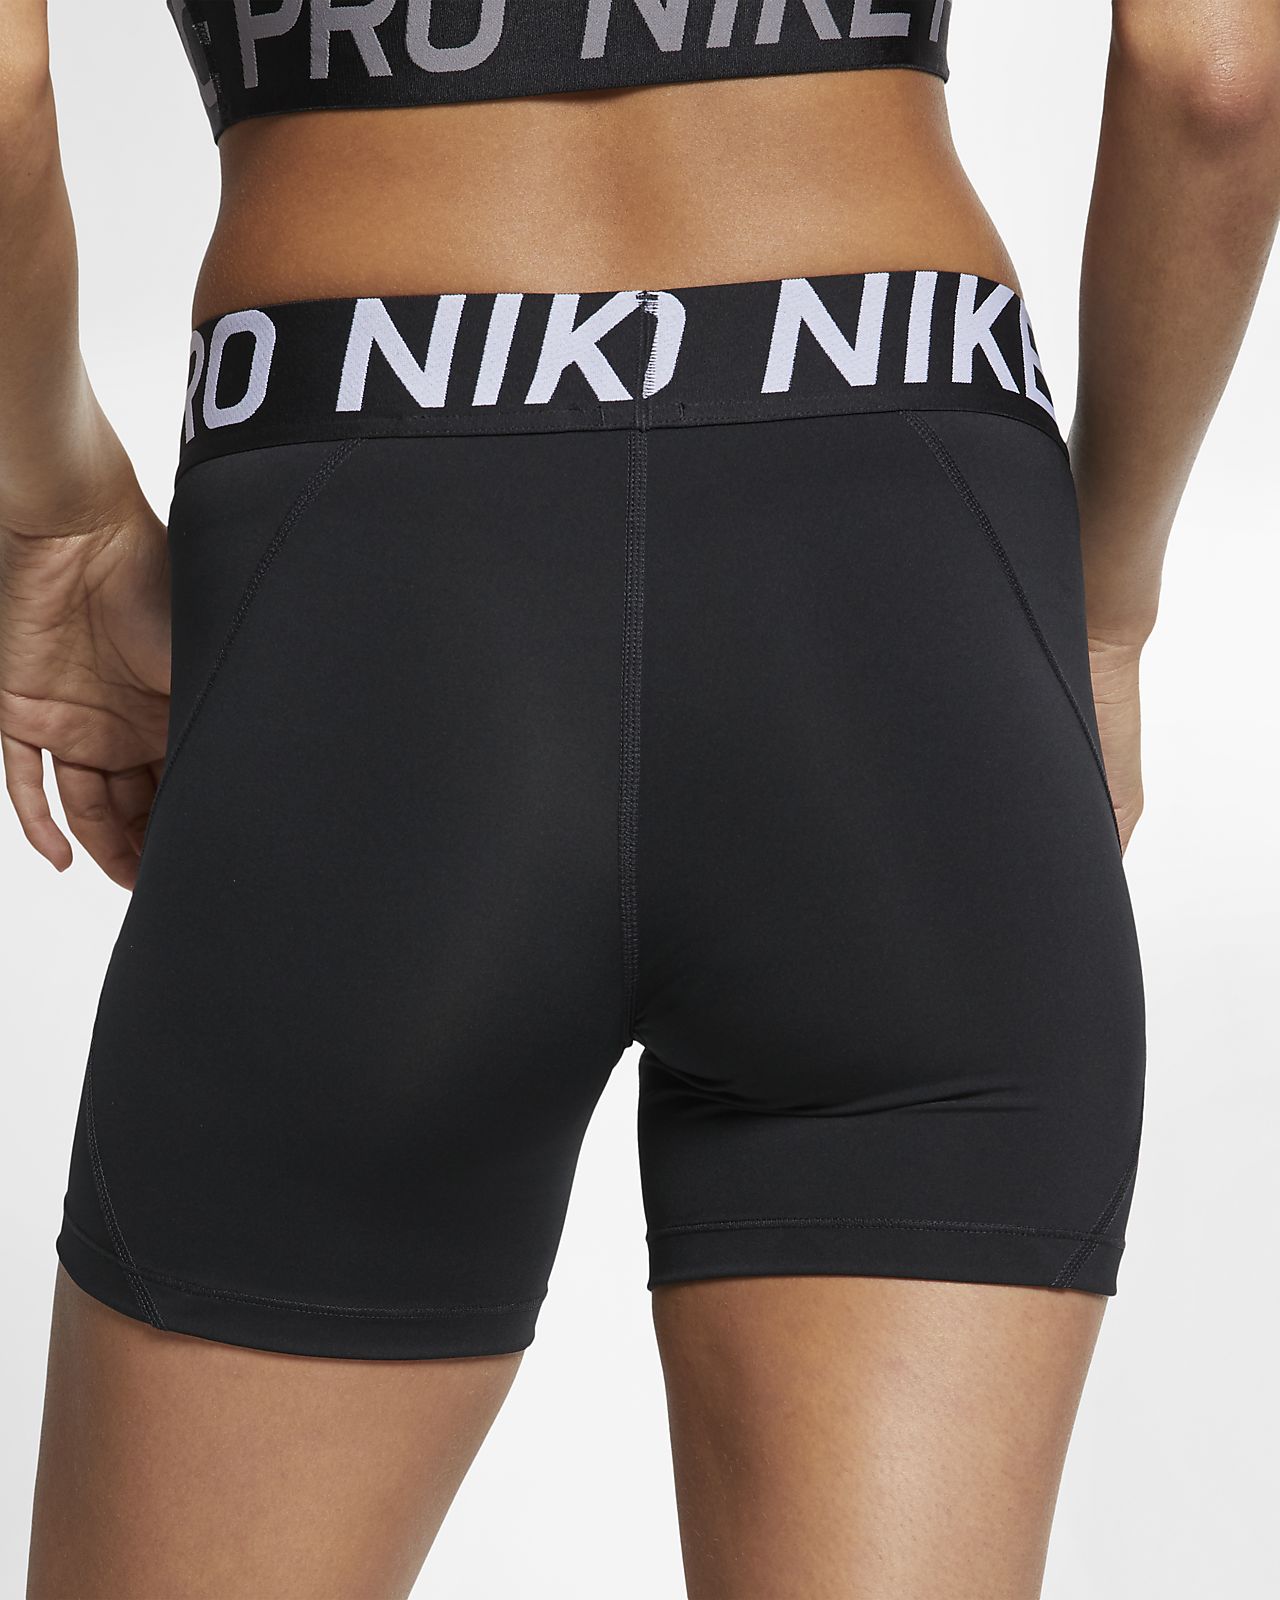 nike 8 inch running shorts